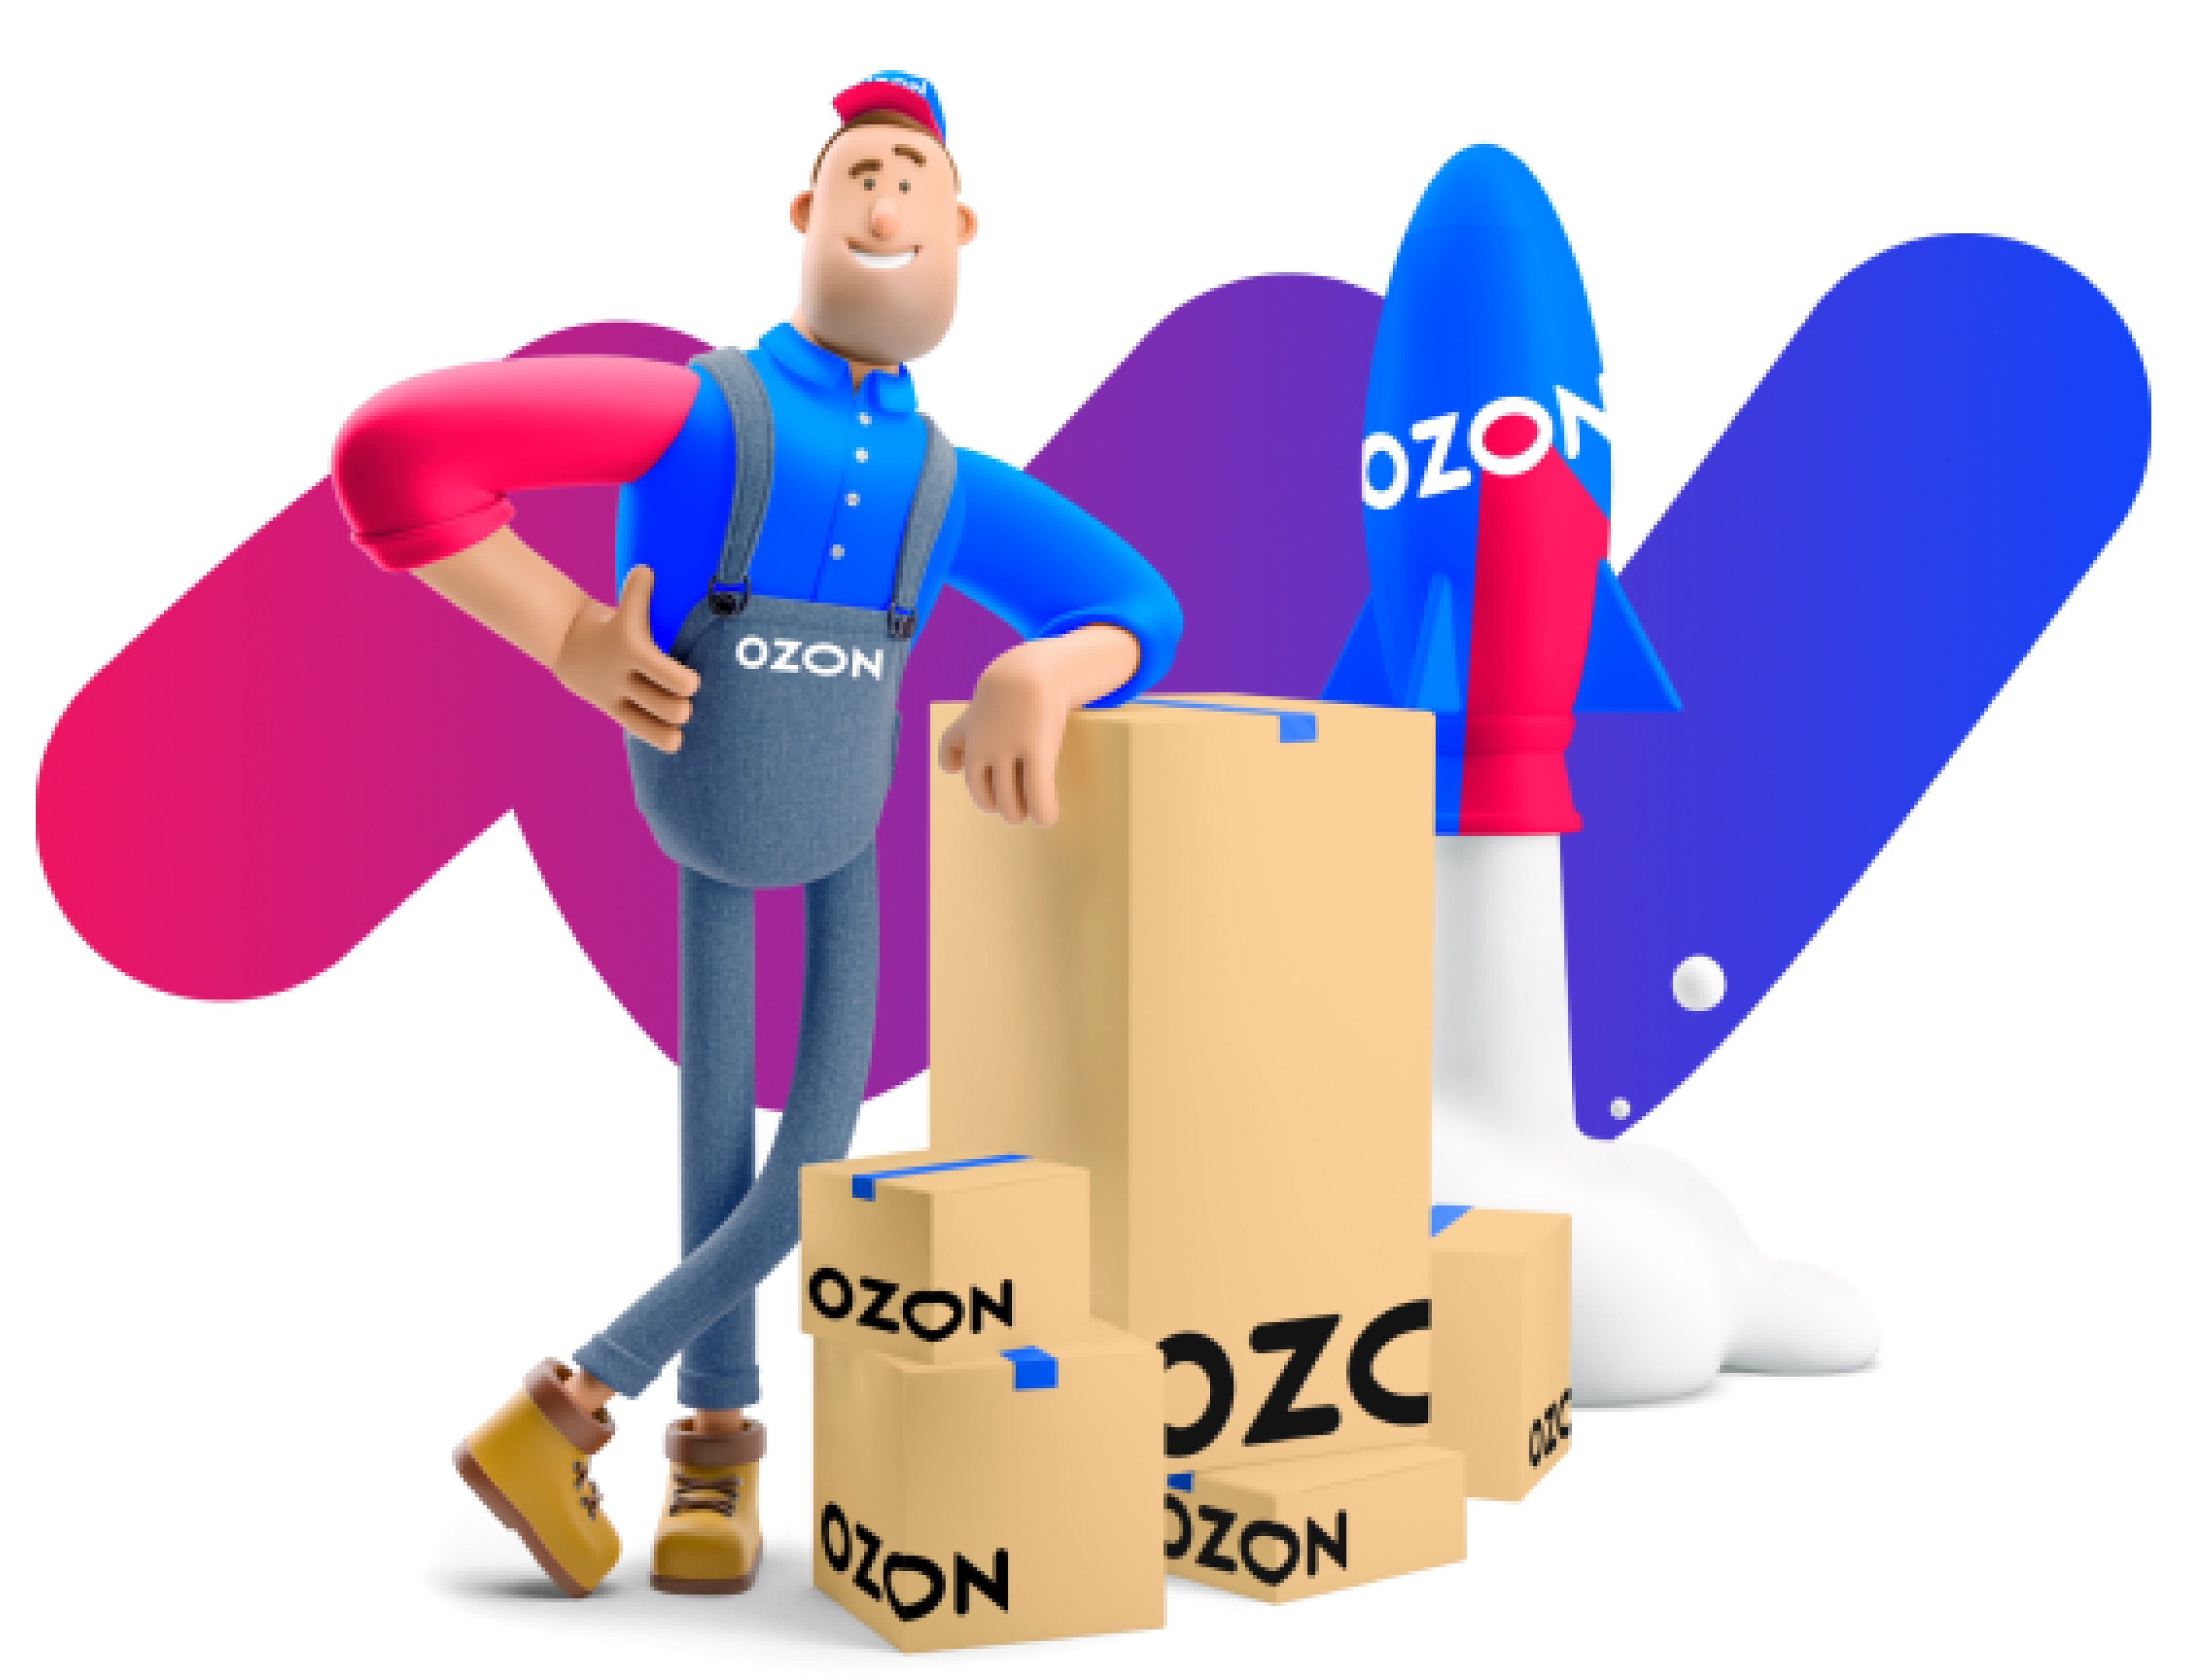 Продвижение в топ озон. Маркетплейсы Озон. Продвижение на Озон. Озон иллюстрации. Логотип OZON маркетплейс.